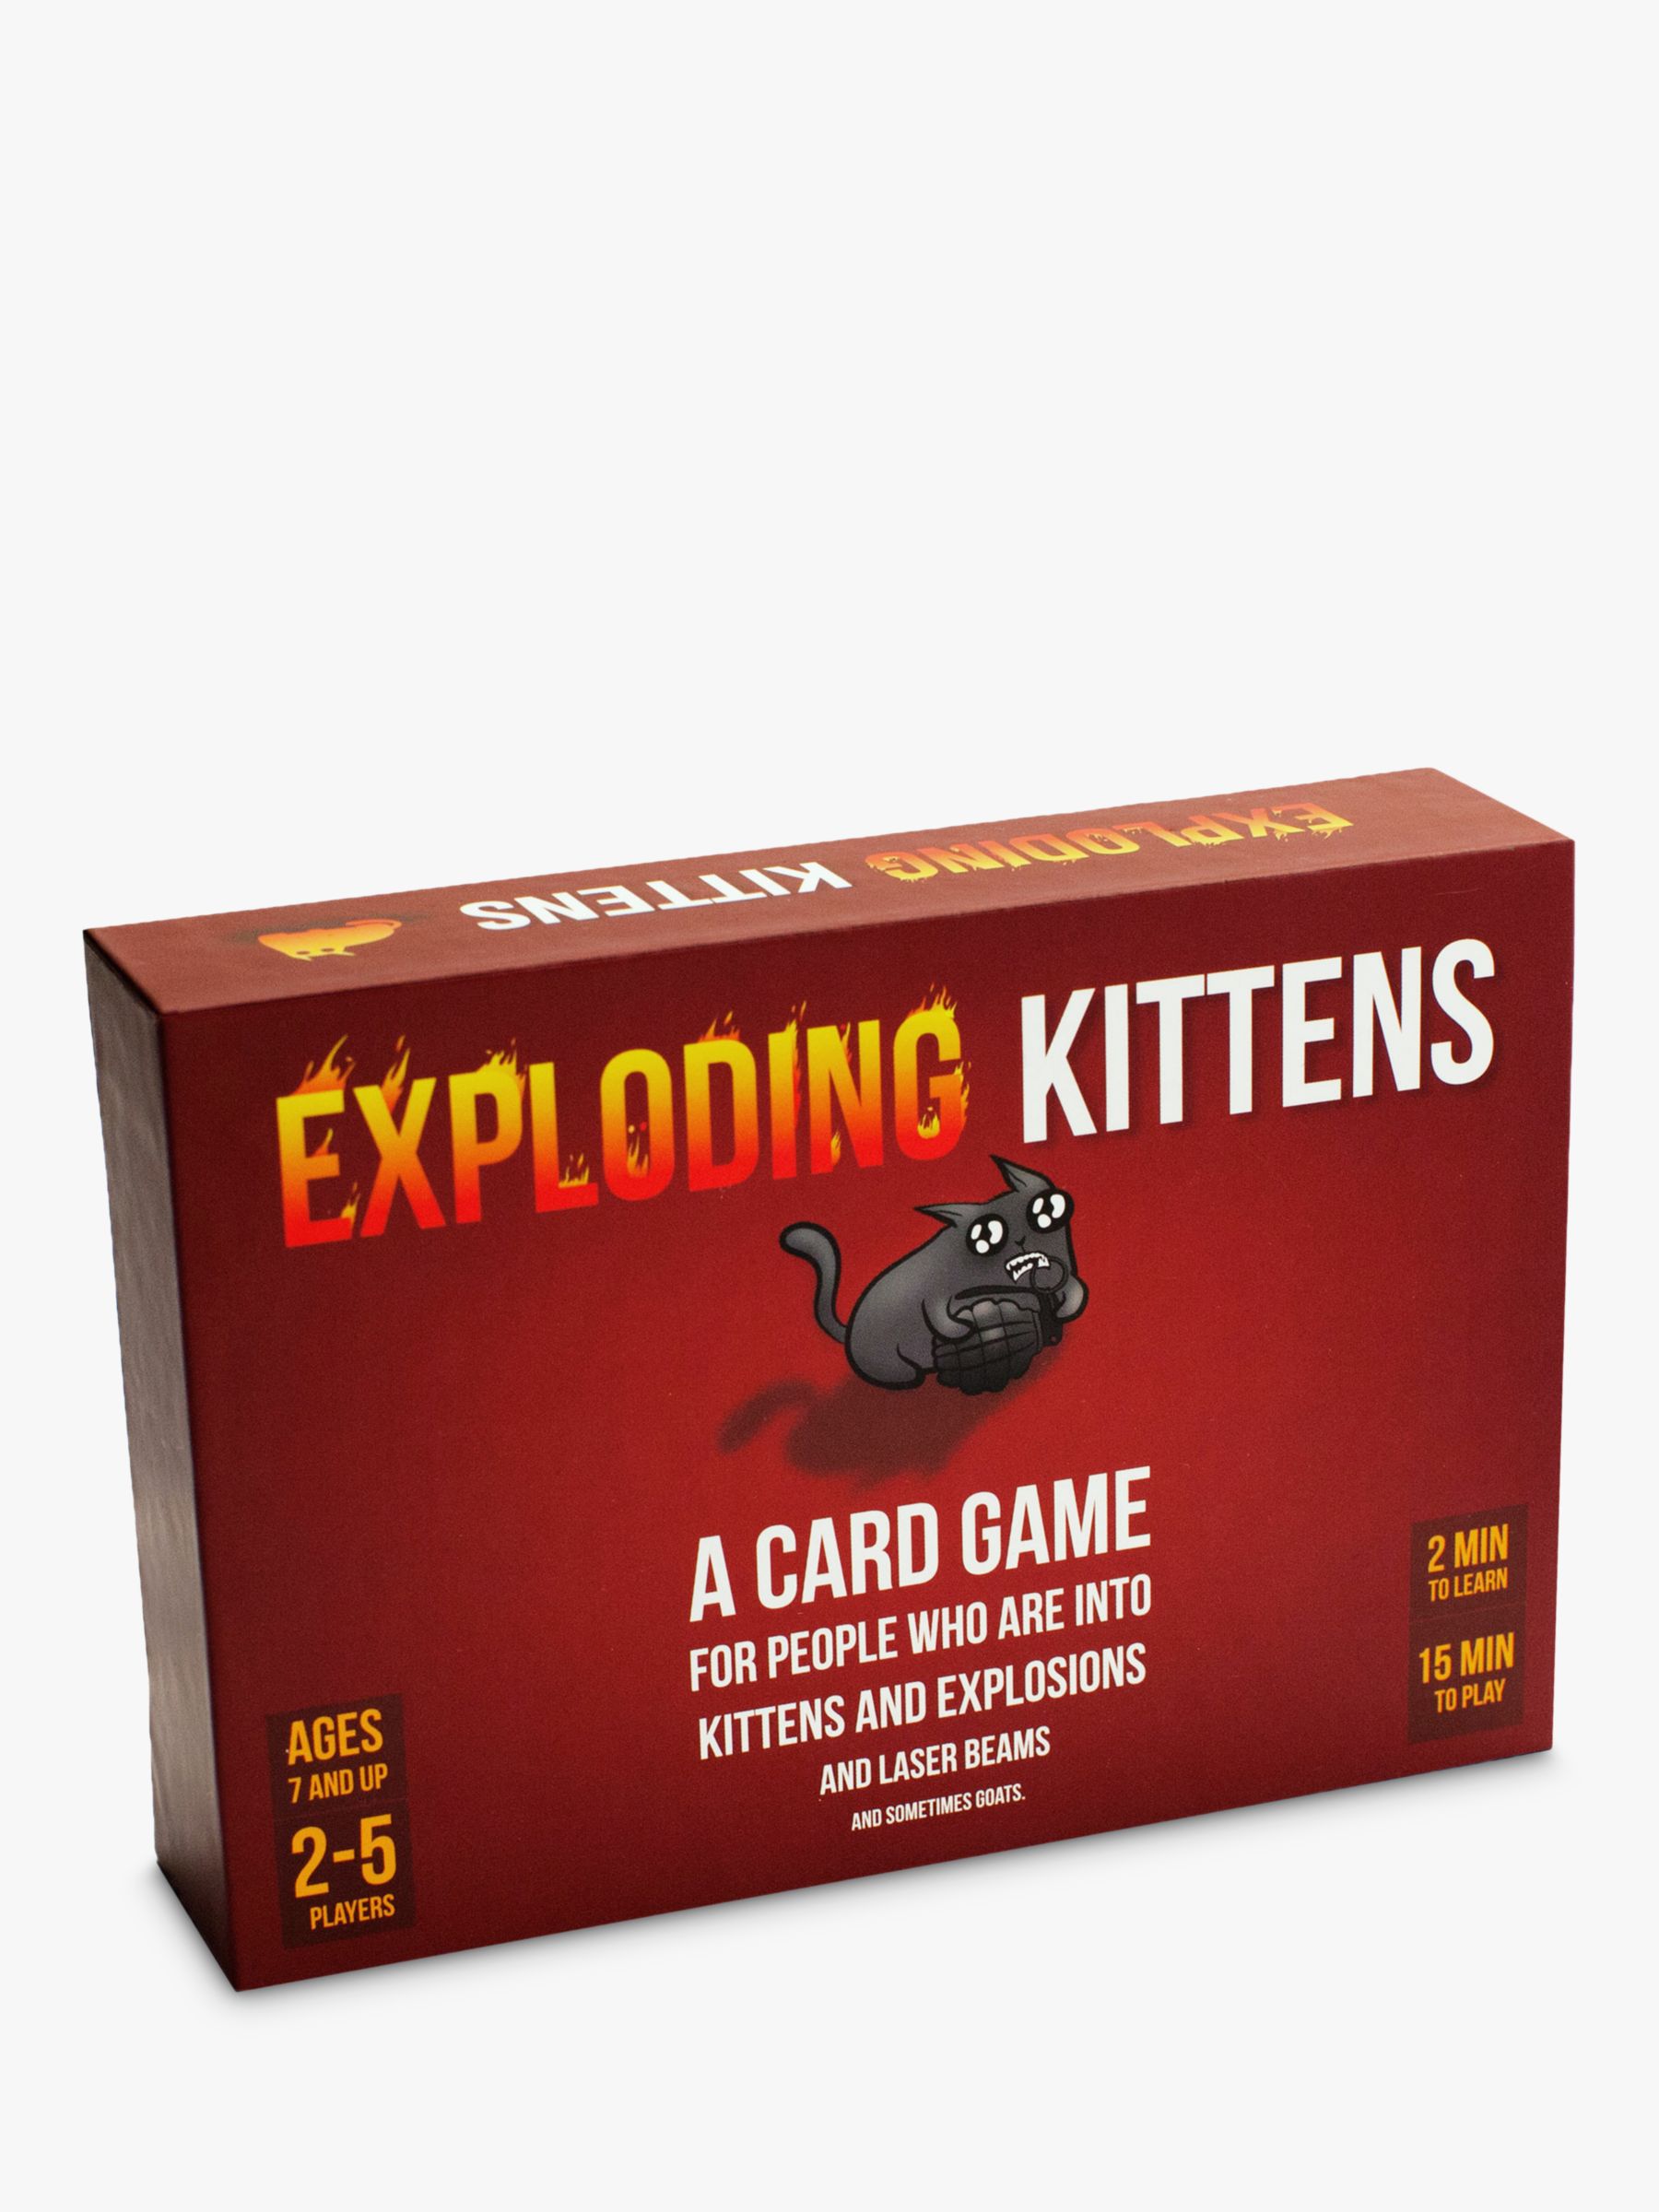 Exploding Kittens® on the App Store